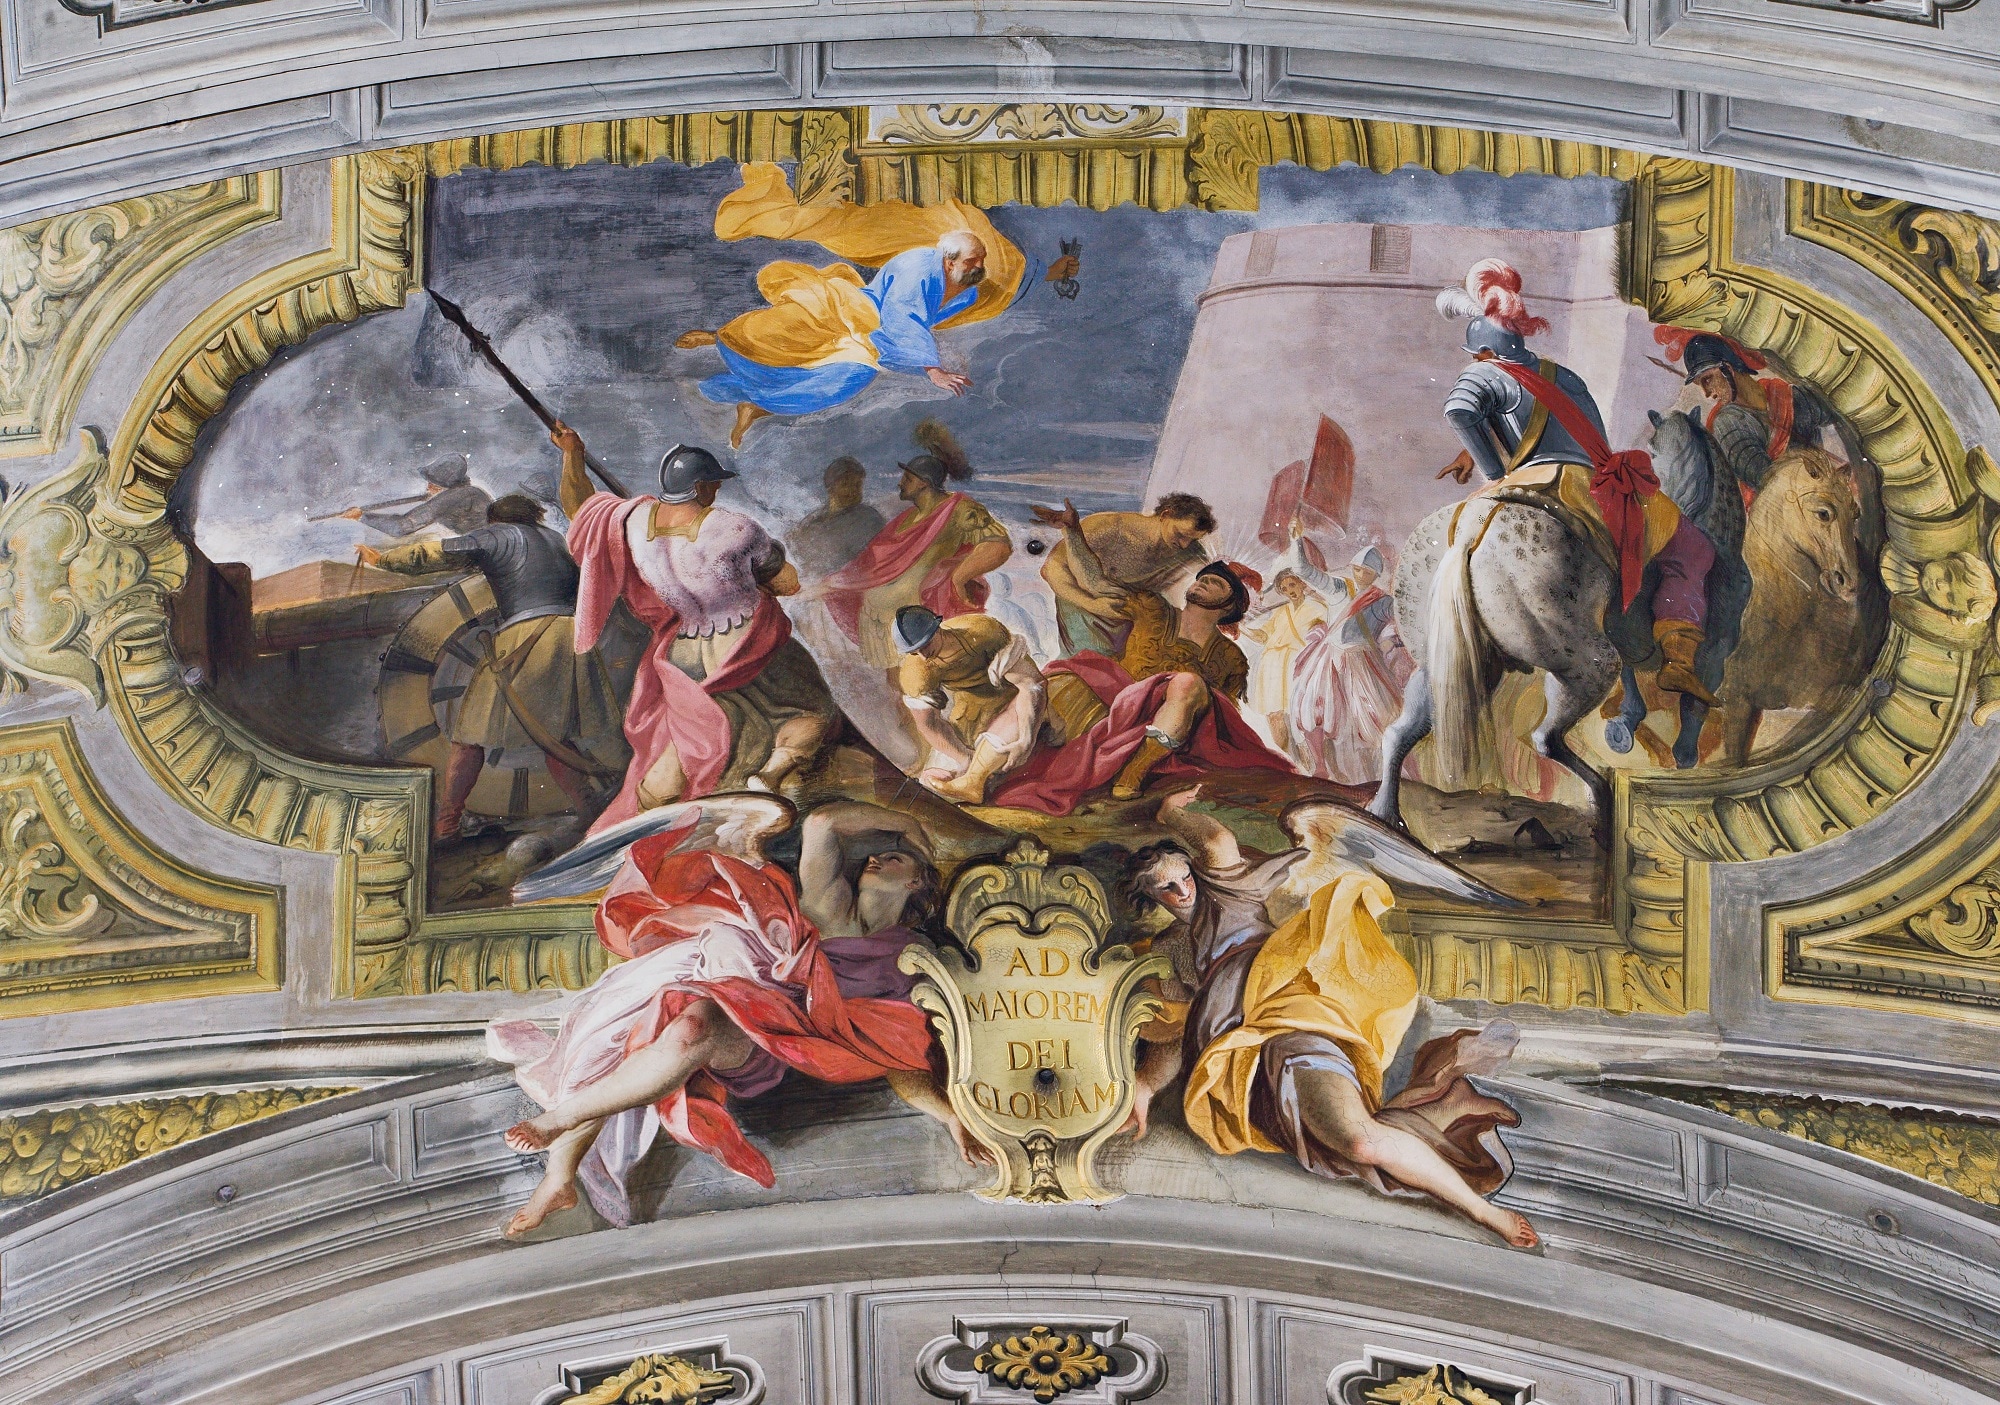 La visione di Sant’Ignazio, Andrea Pozzo, affresco della volta del transetto, Chiesa di Sant’Ignazio di Loyola, Roma